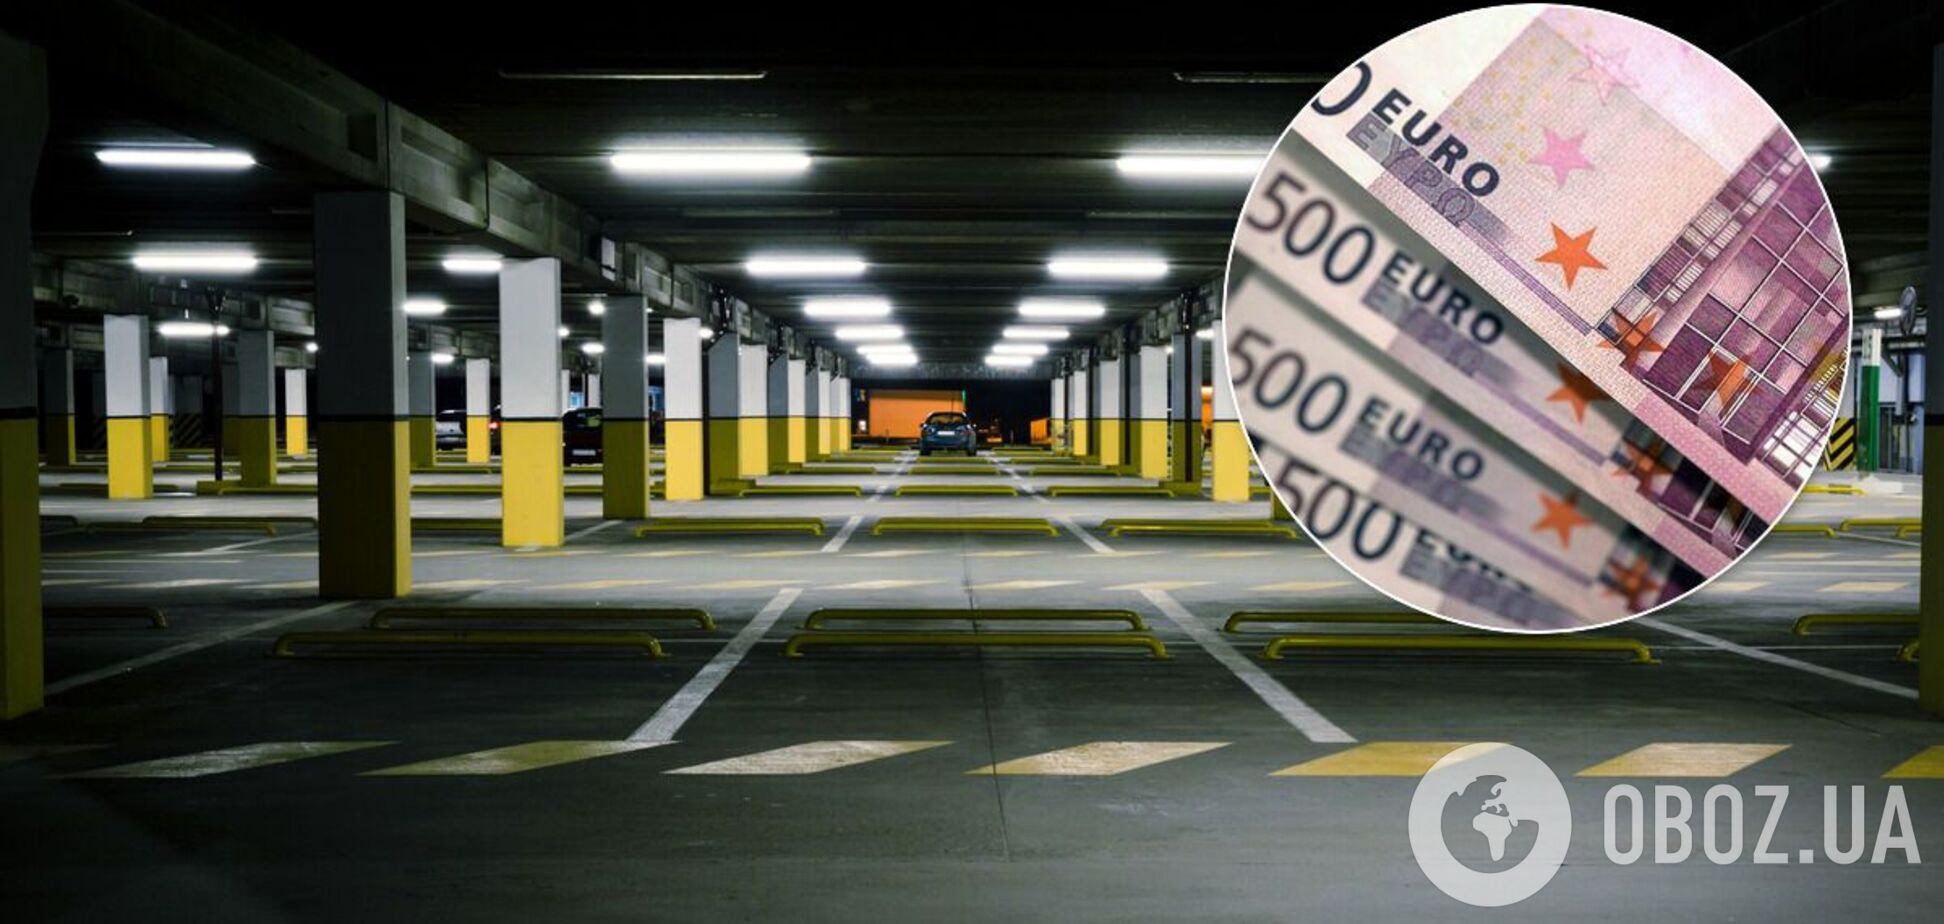 Знайдено паркувальне місце за 1 млн євро: як воно виглядає